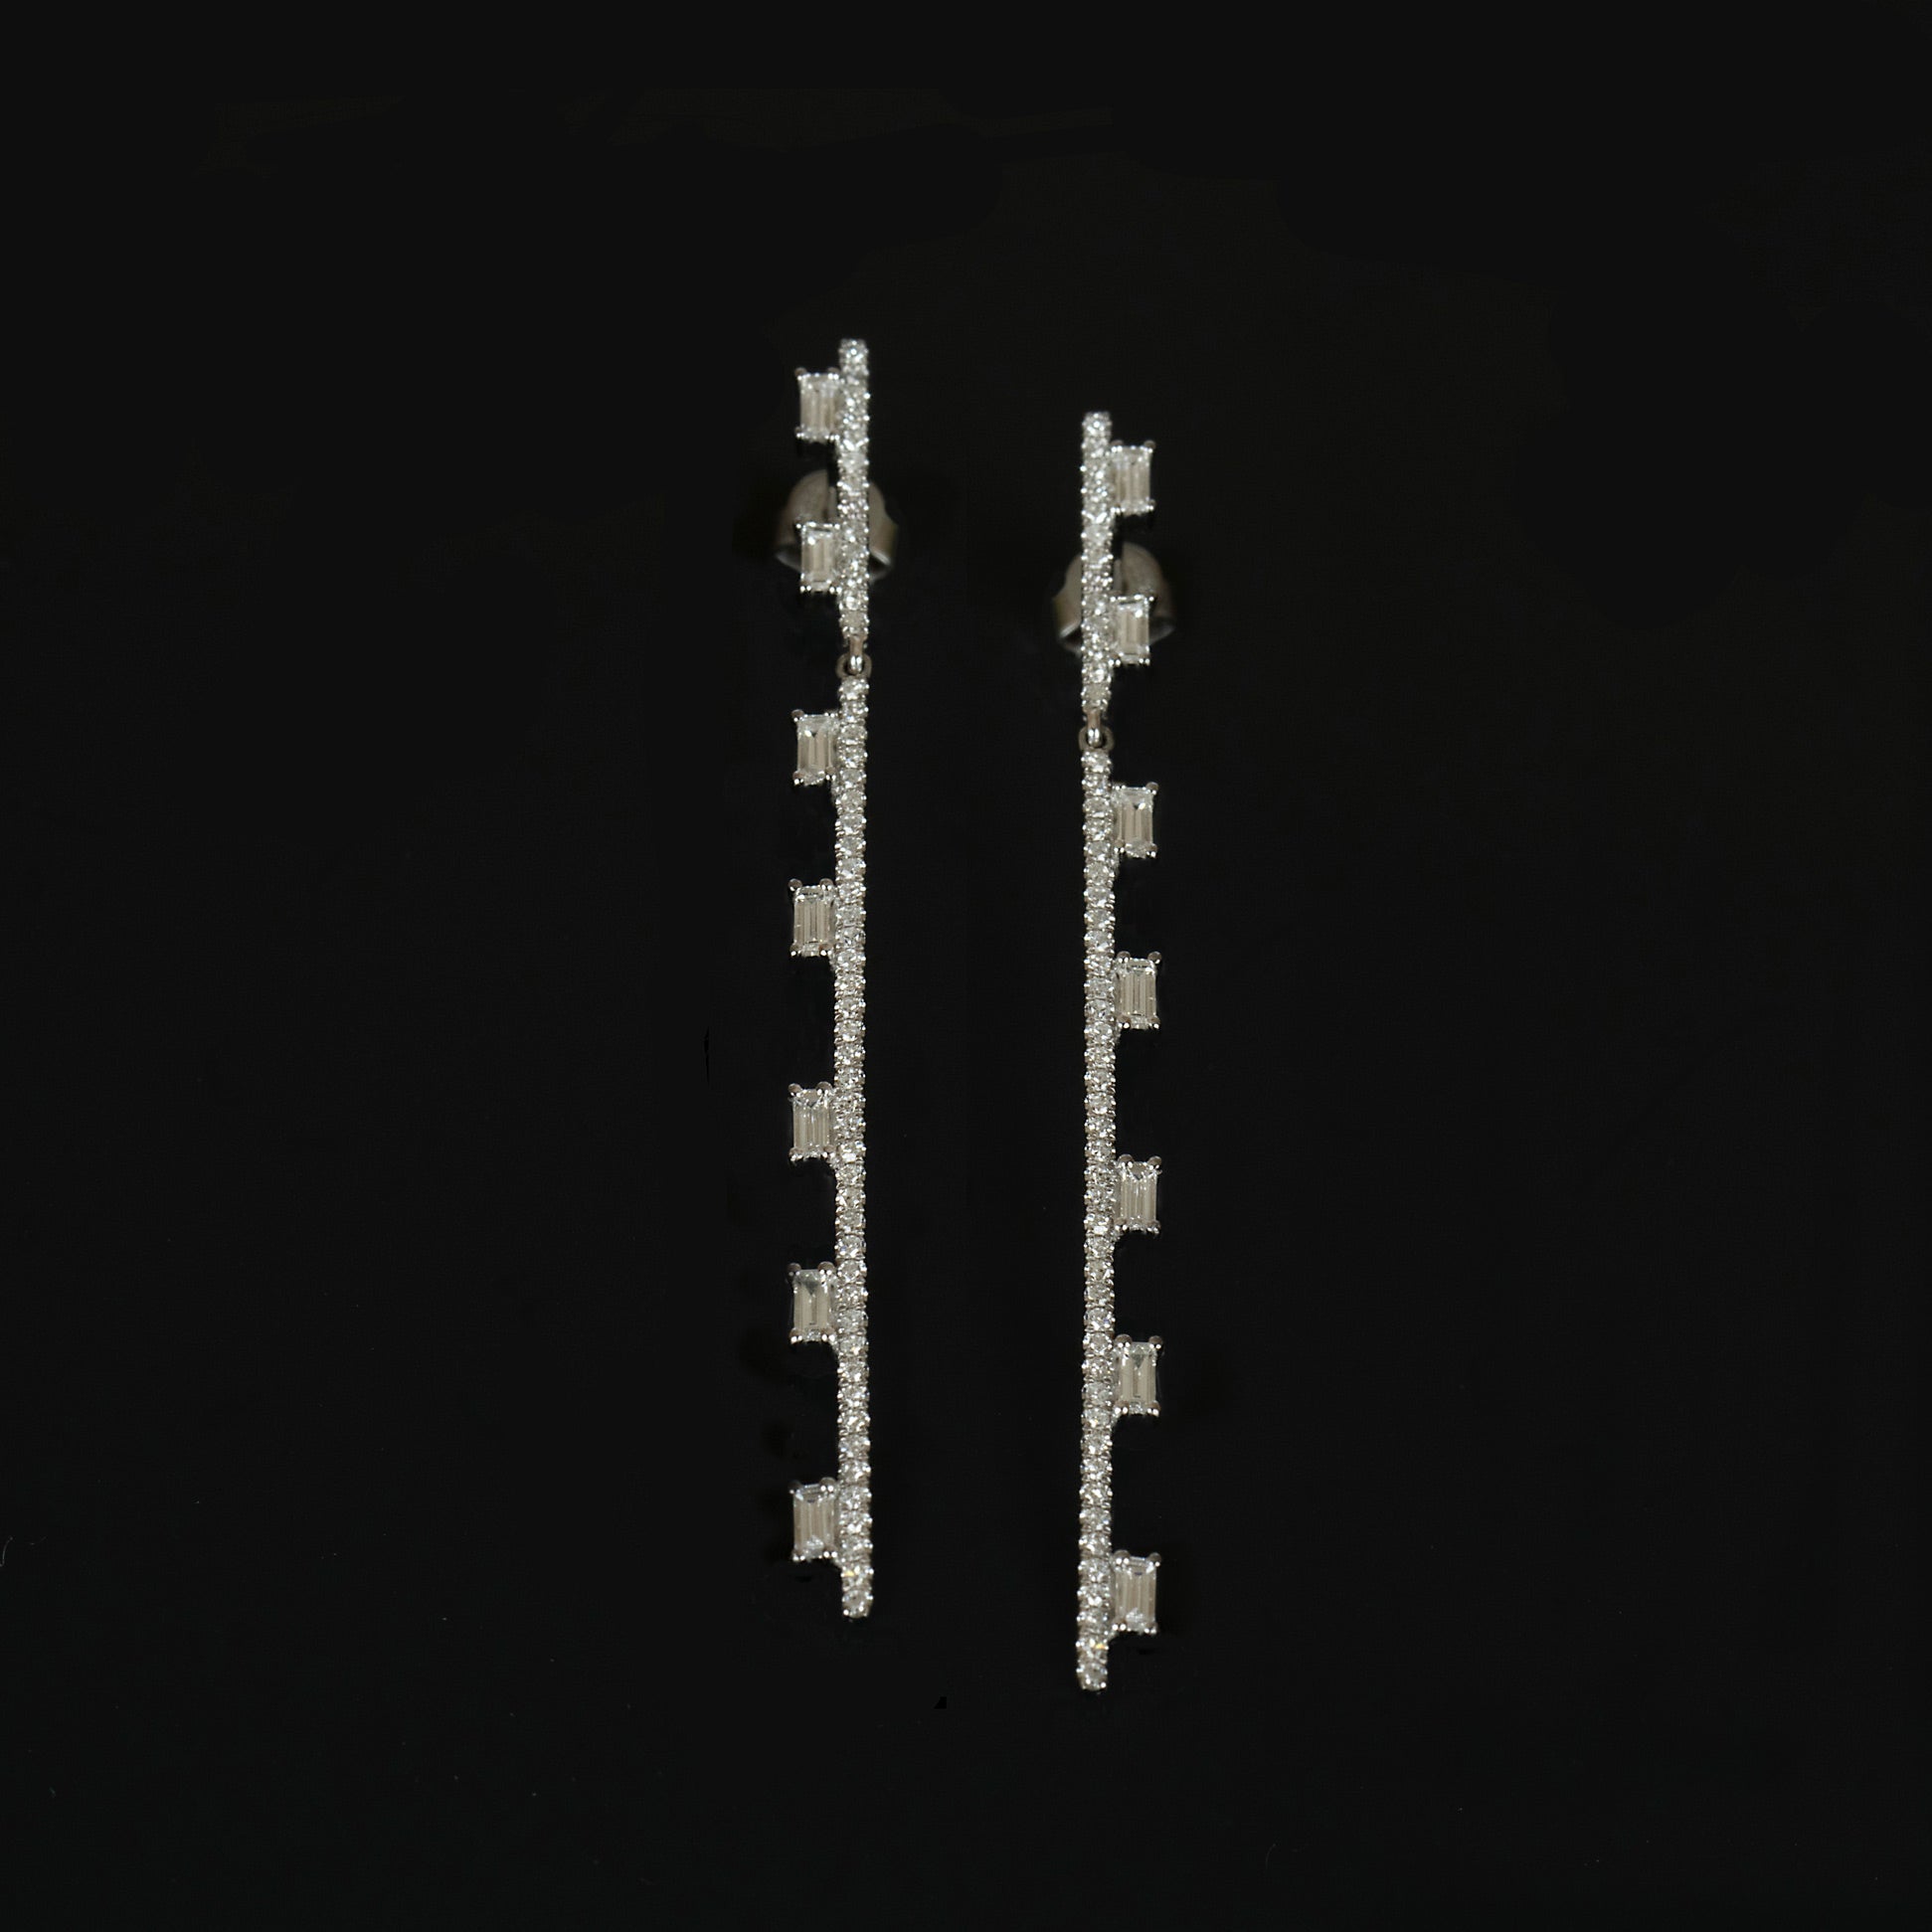 Baguette Diamond Drop Earrings on a black background